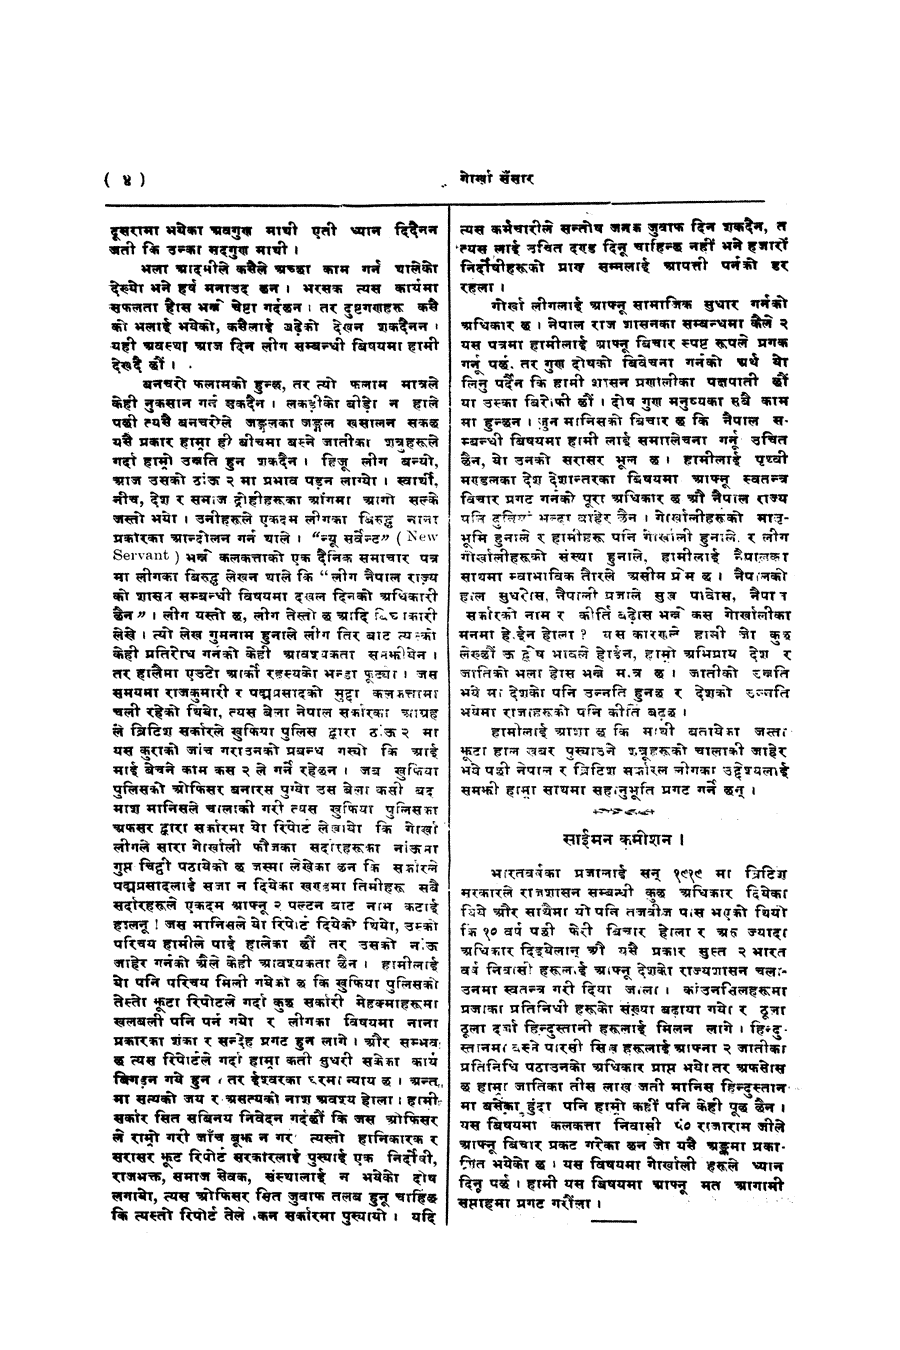 Gorkha Sansar, 29 Nov 1927, page 4